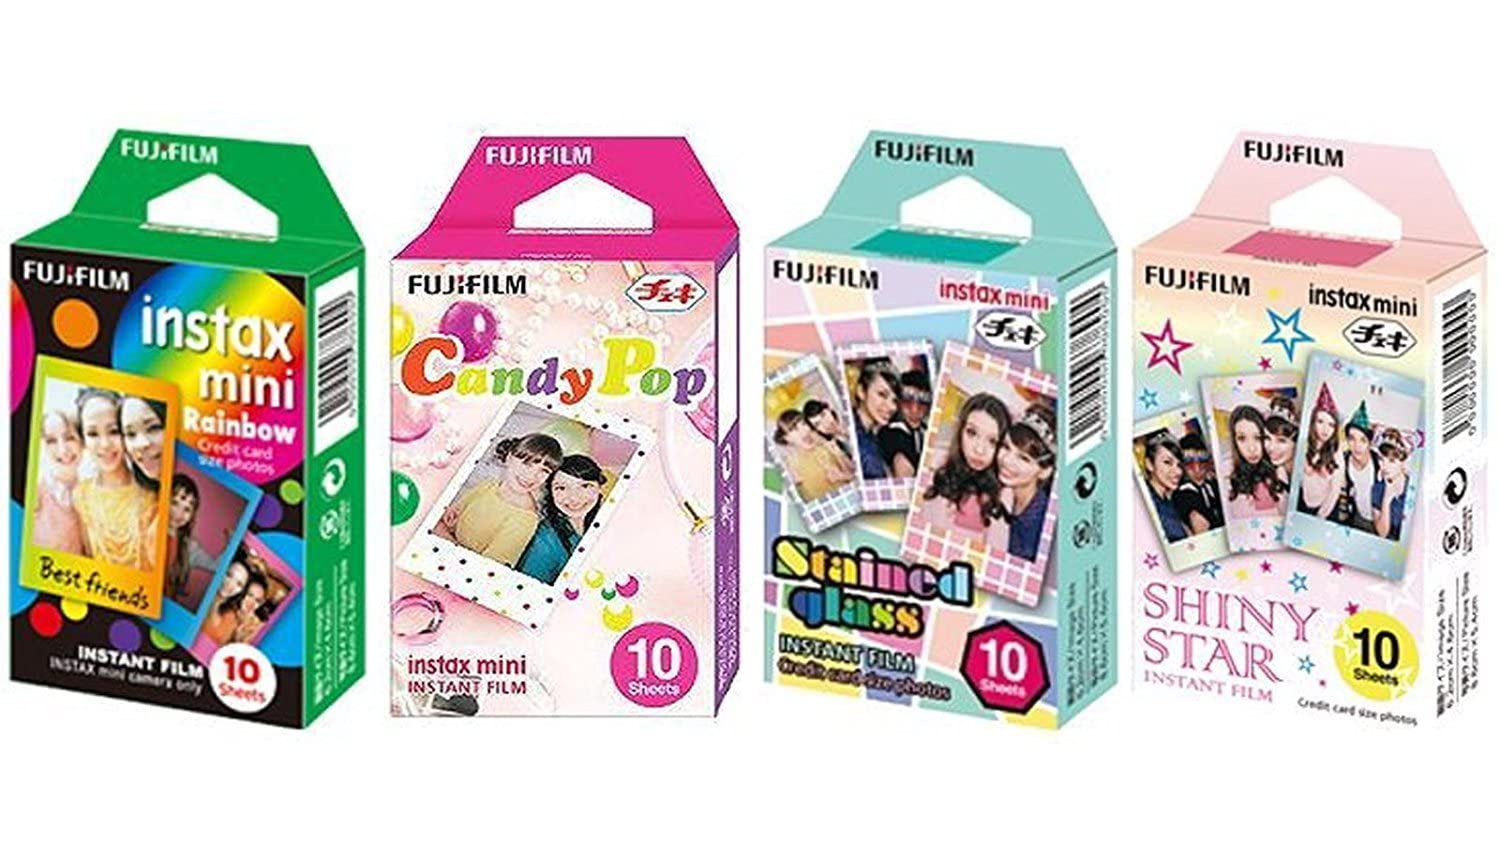 Fujifilm InstaX 迷你即时胶片彩虹、彩色玻璃、糖果流行和闪亮星星胶片 -10 张 X 4 套超值...